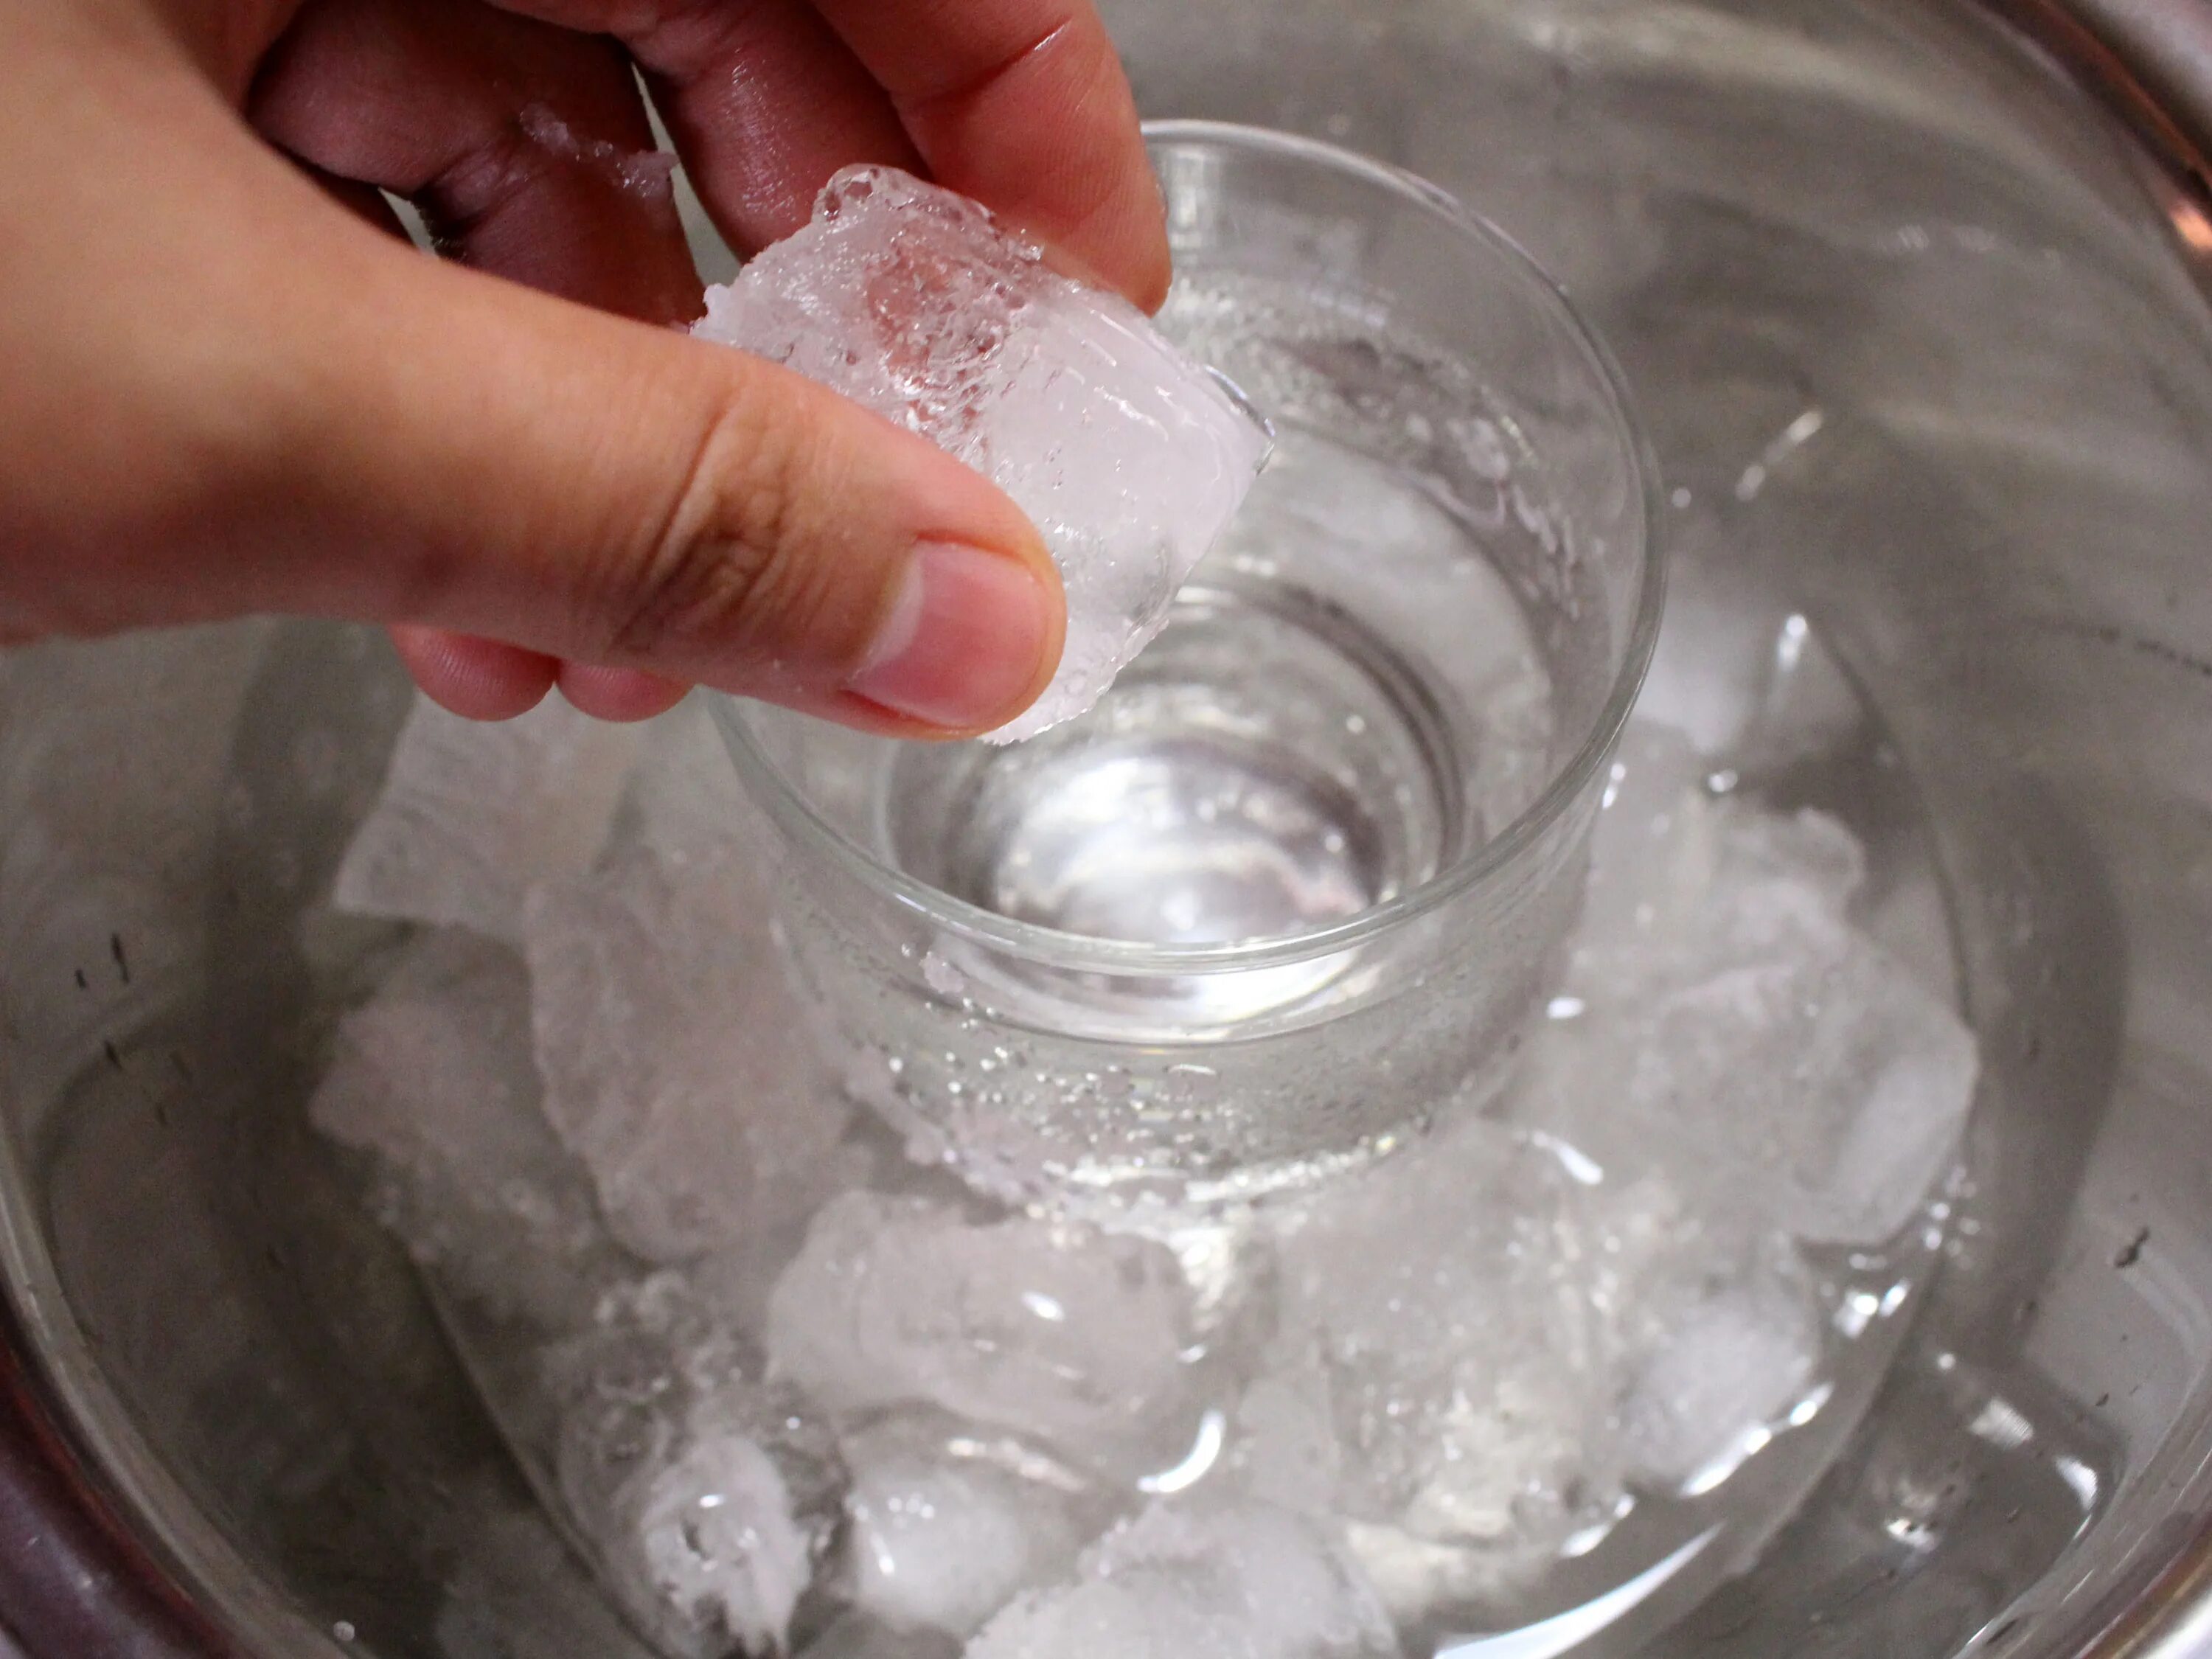 Опыты со льдом. Опыты со снегом. Стакан со льдом в опыте. Лед в стакане. Ледяная горячая вода